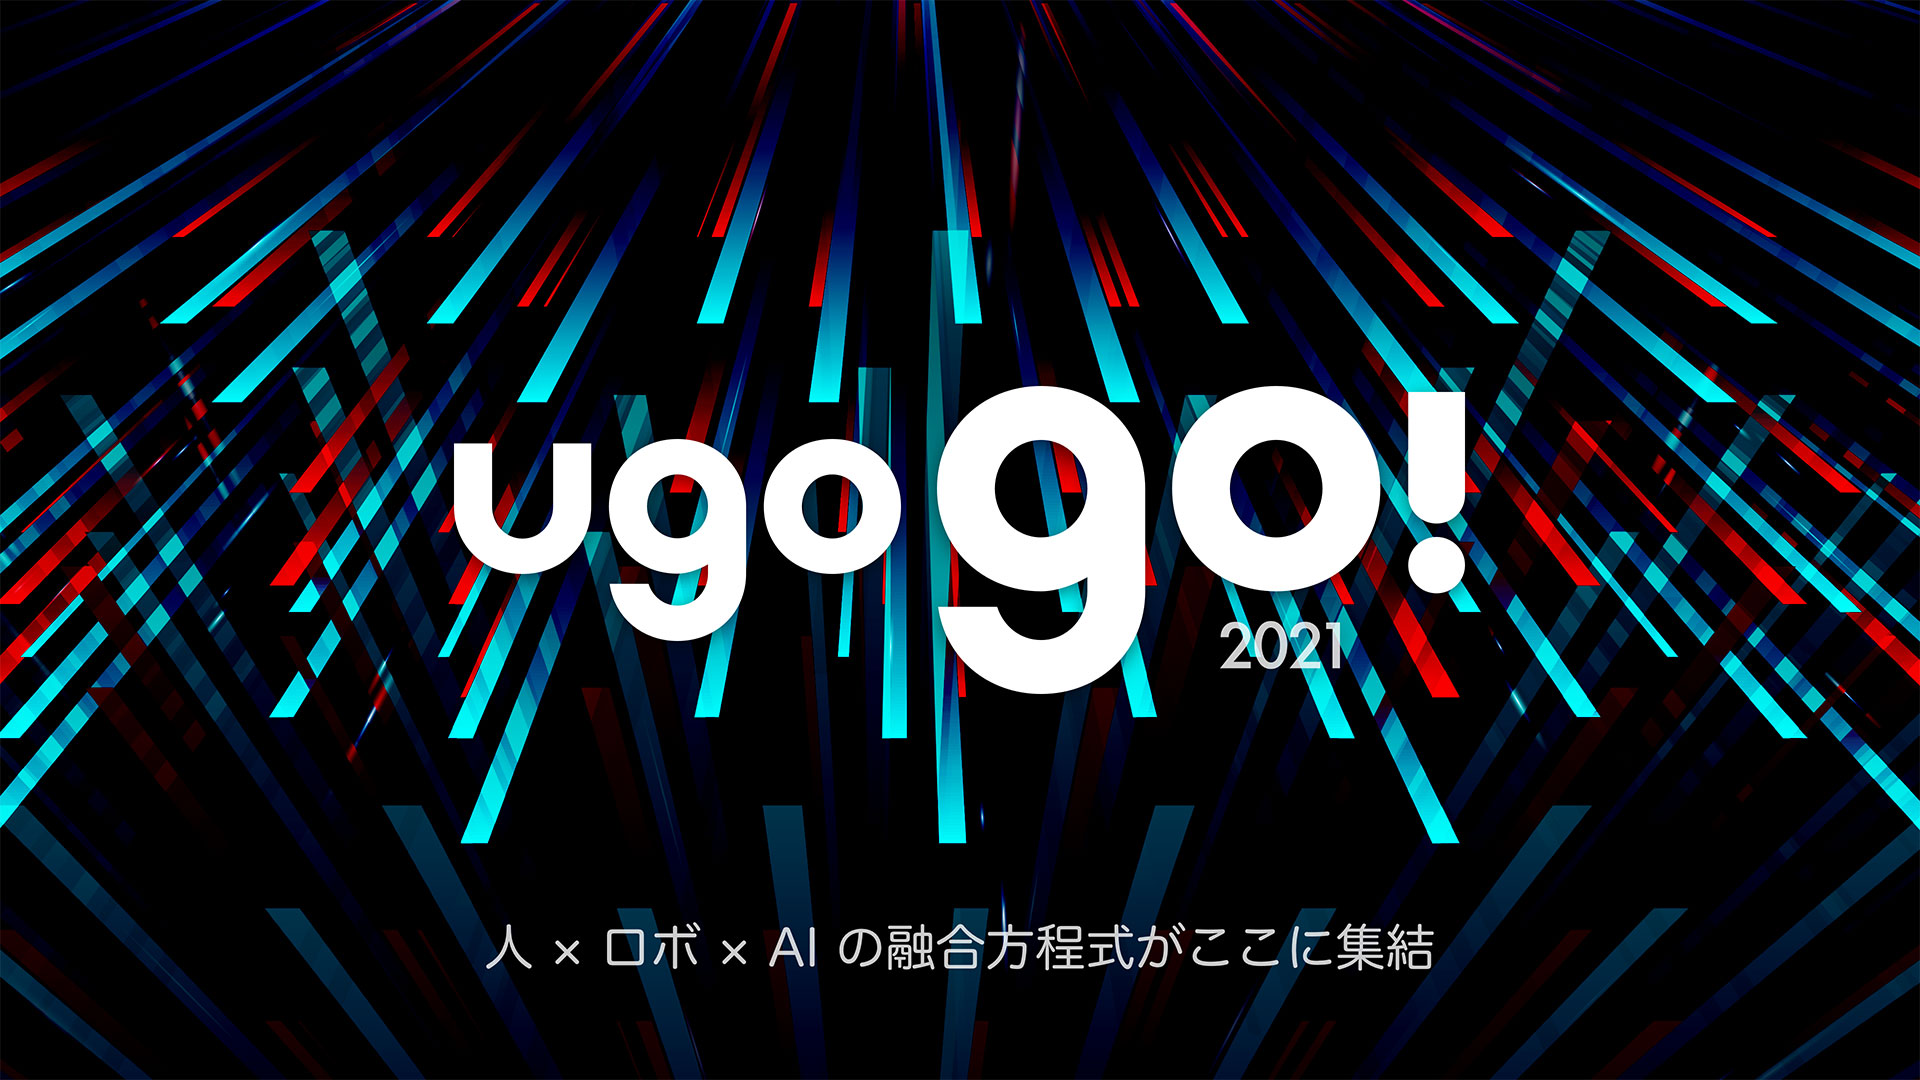 ugo株式会社主催「ugo go!2021」出展のお知らせ